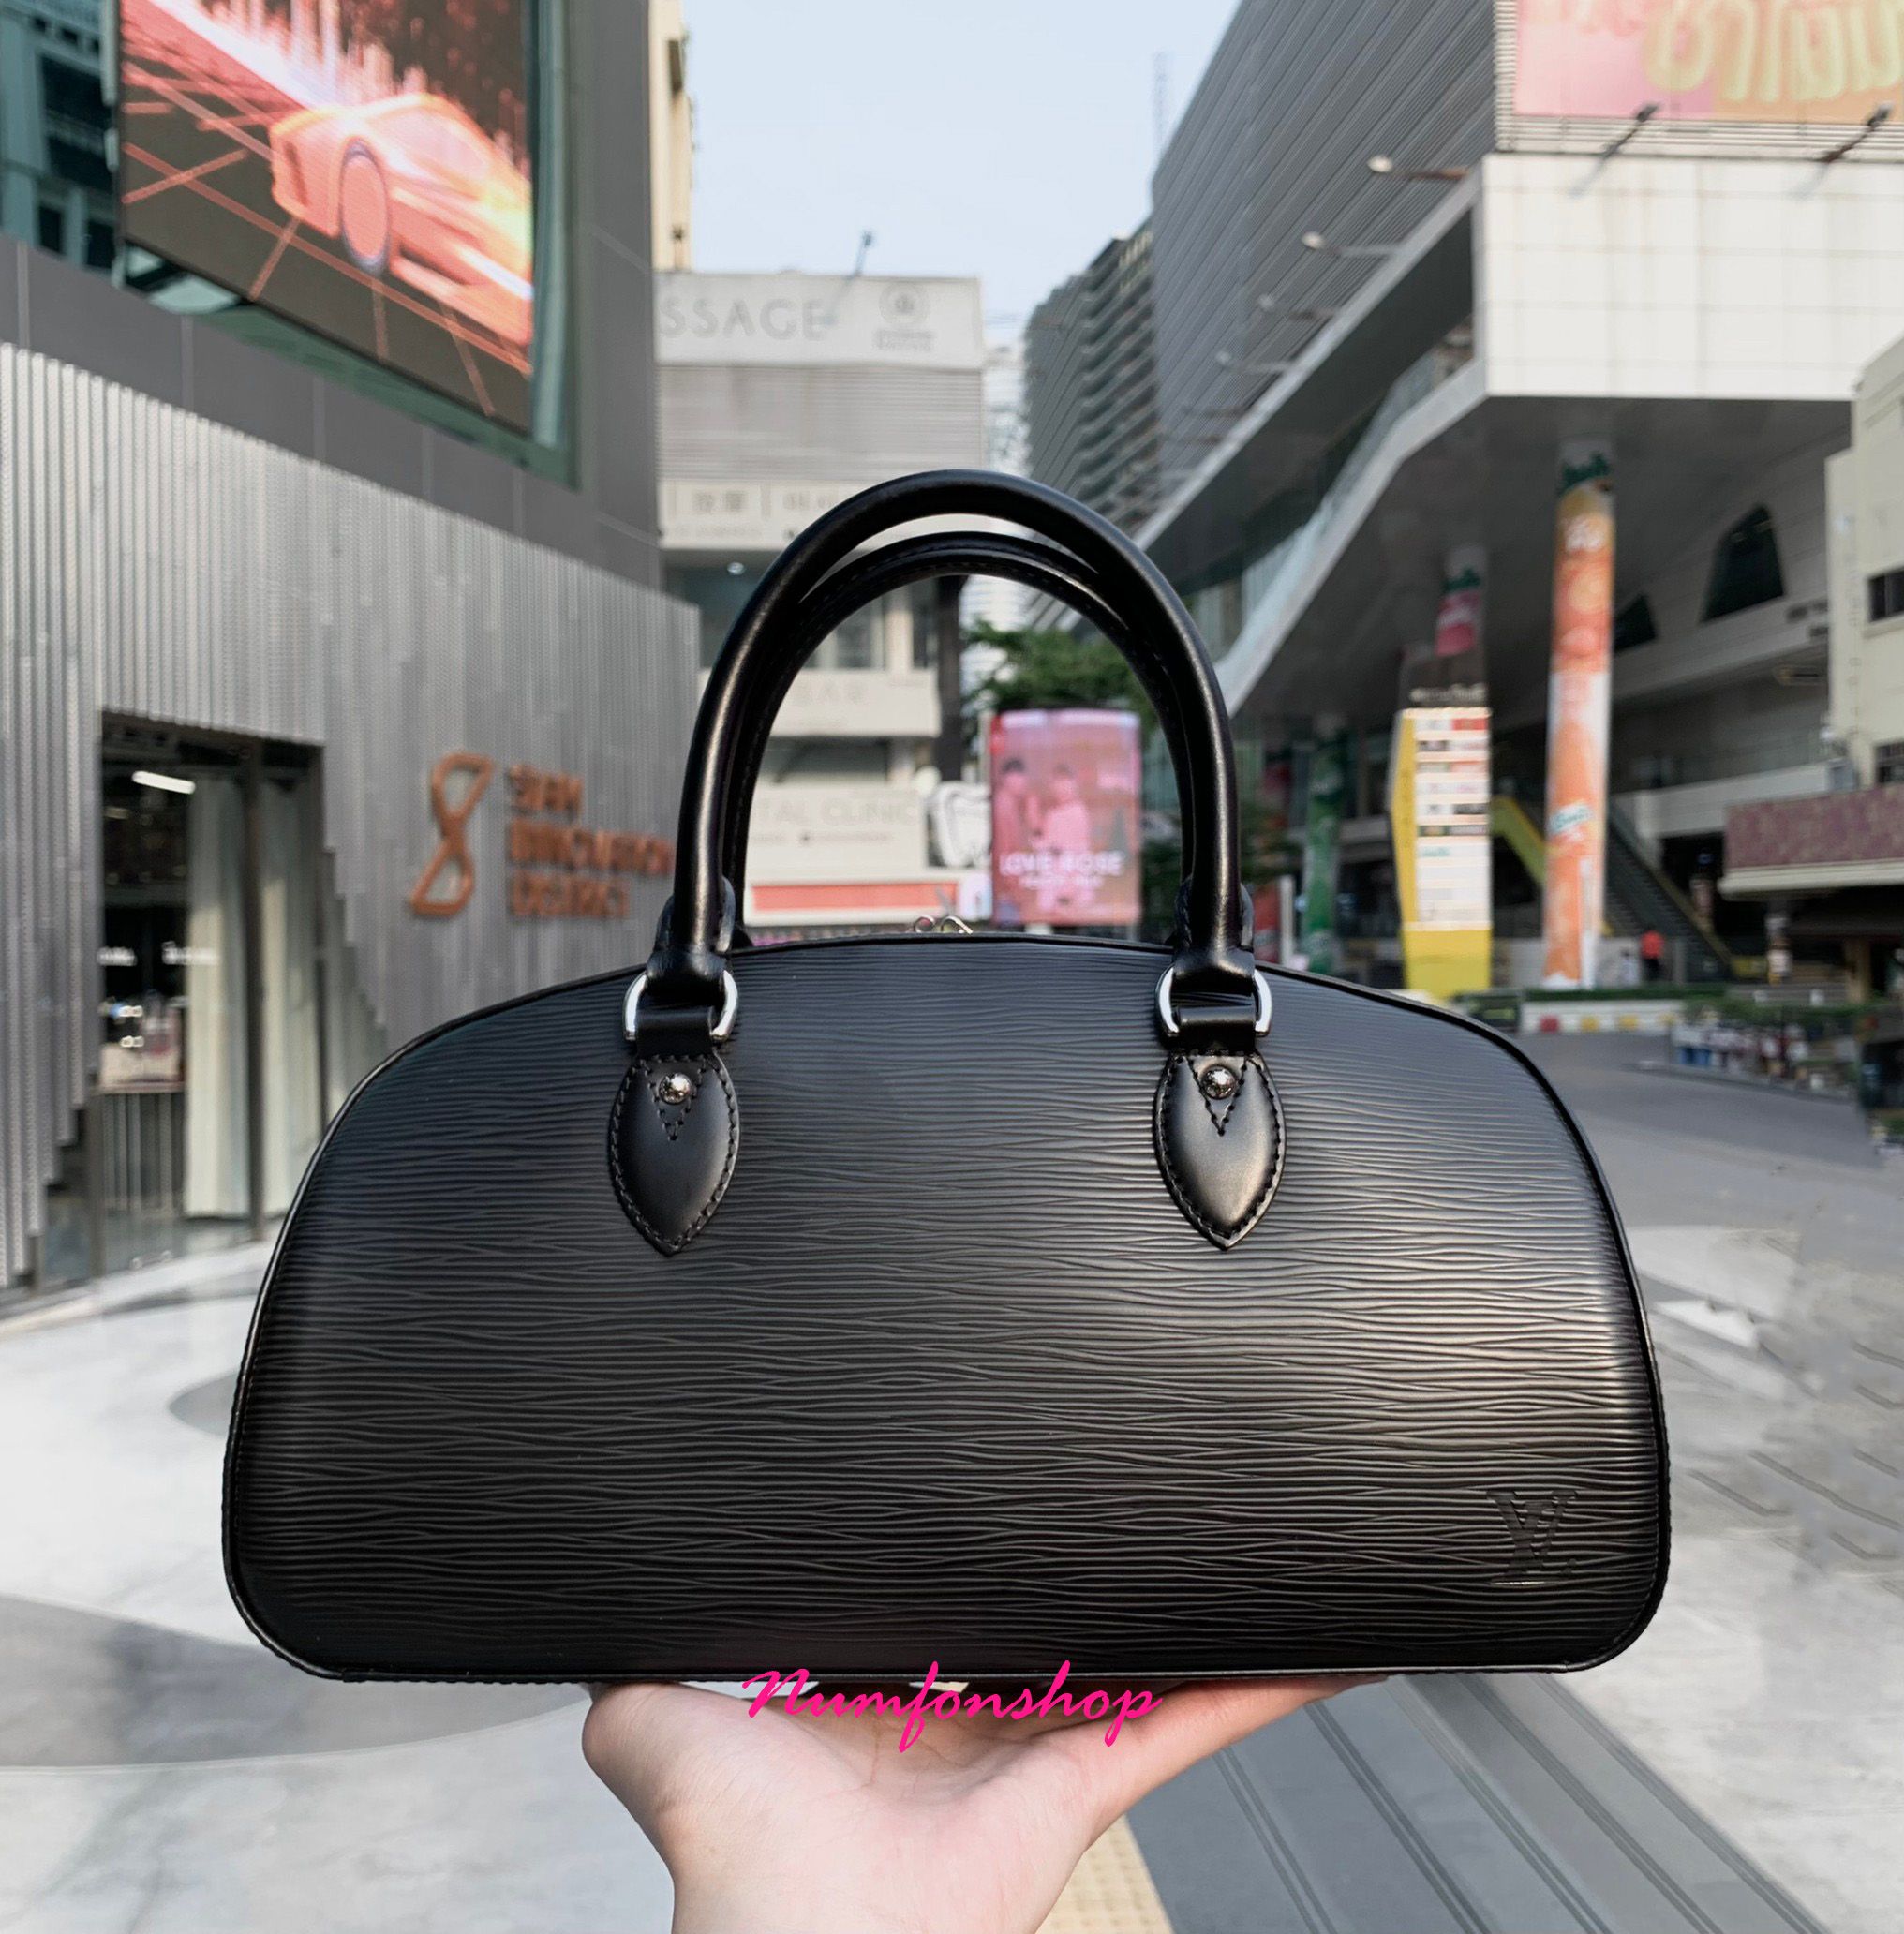 Louis Vuitton Handbags for sale in Bangkok, Thailand